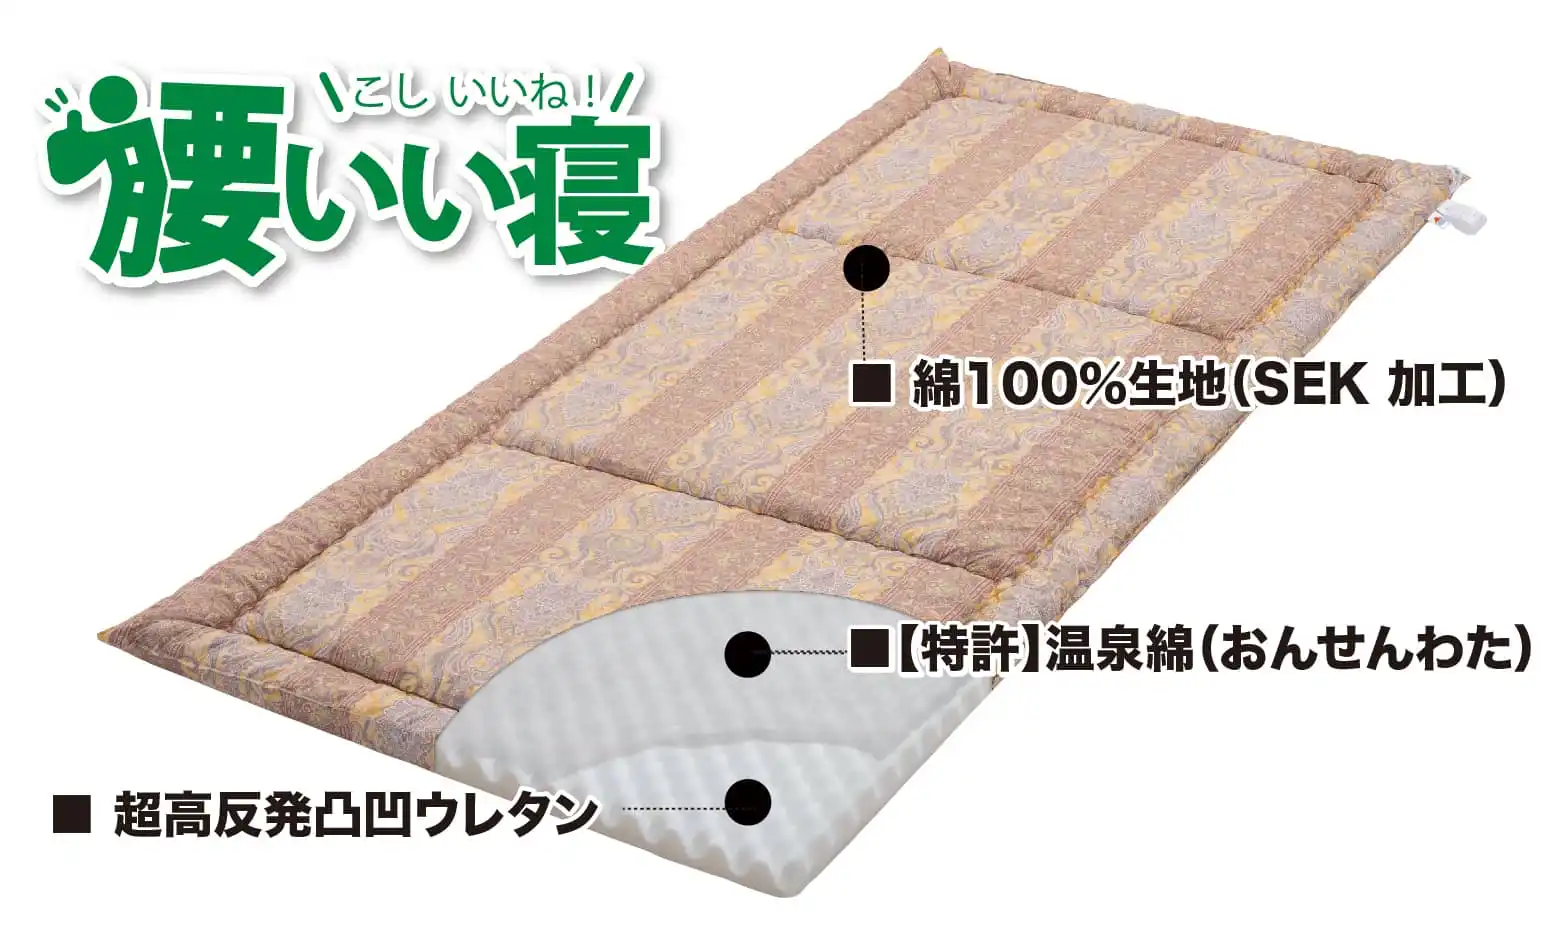 【特許】温泉綿の遠赤外線効果で、身体の内部から温まる敷布団「腰いい寝」